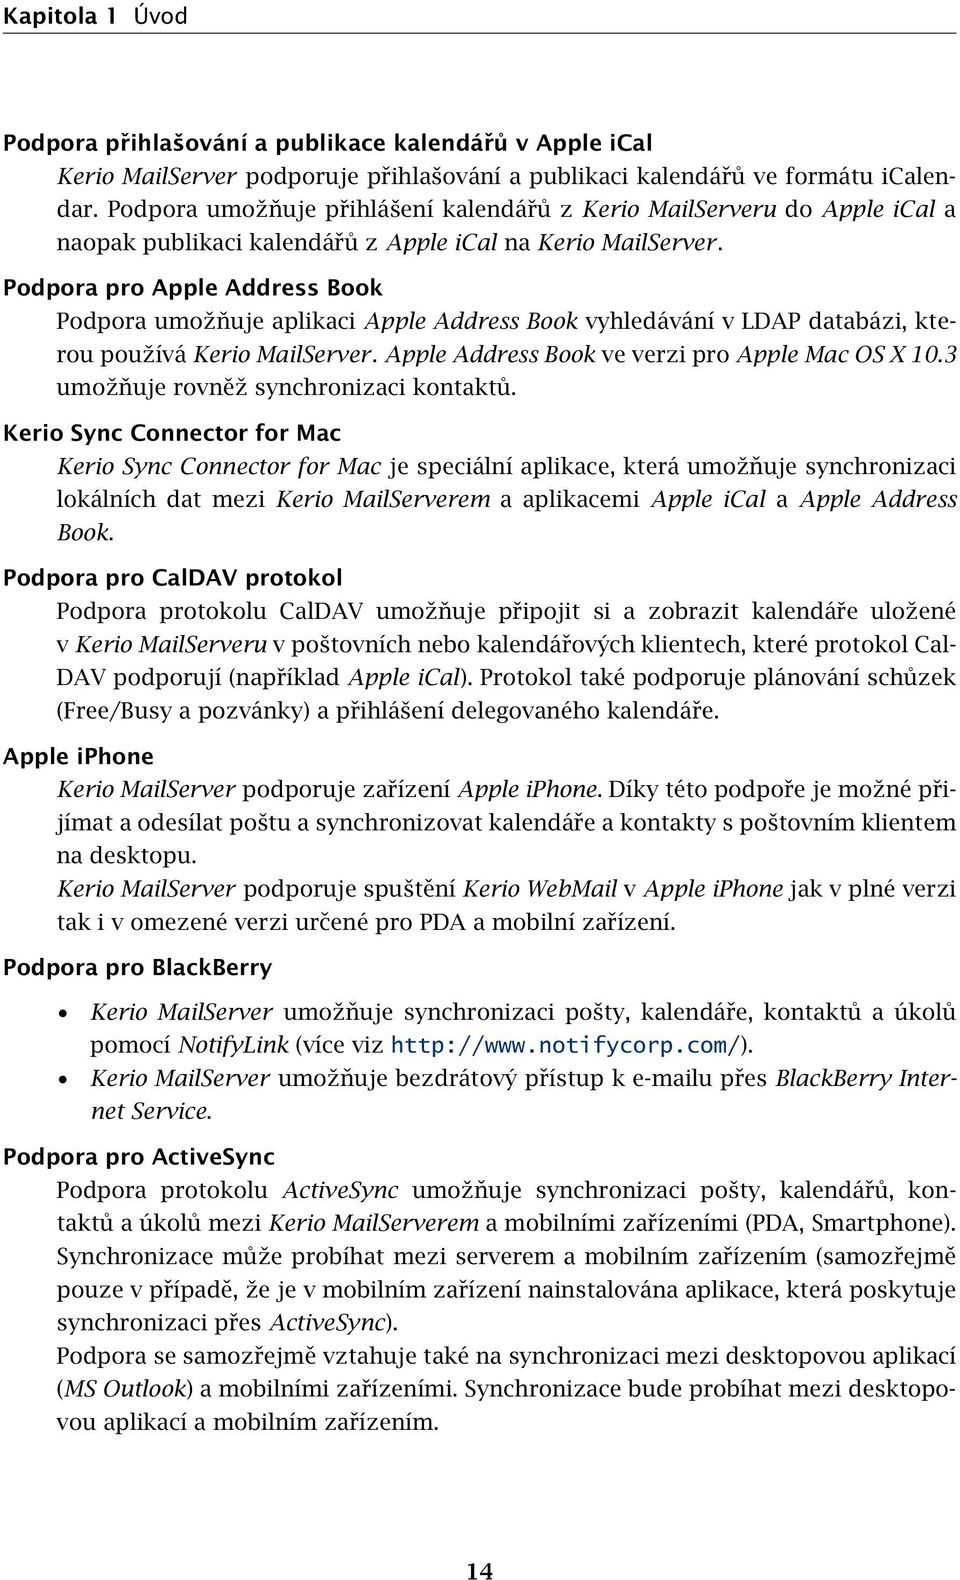 Podpora pro Apple Address Book Podpora umožňuje aplikaci Apple Address Book vyhledávání v LDAP databázi, kterou používá Kerio MailServer. Apple Address Book ve verzi pro Apple Mac OS X 10.